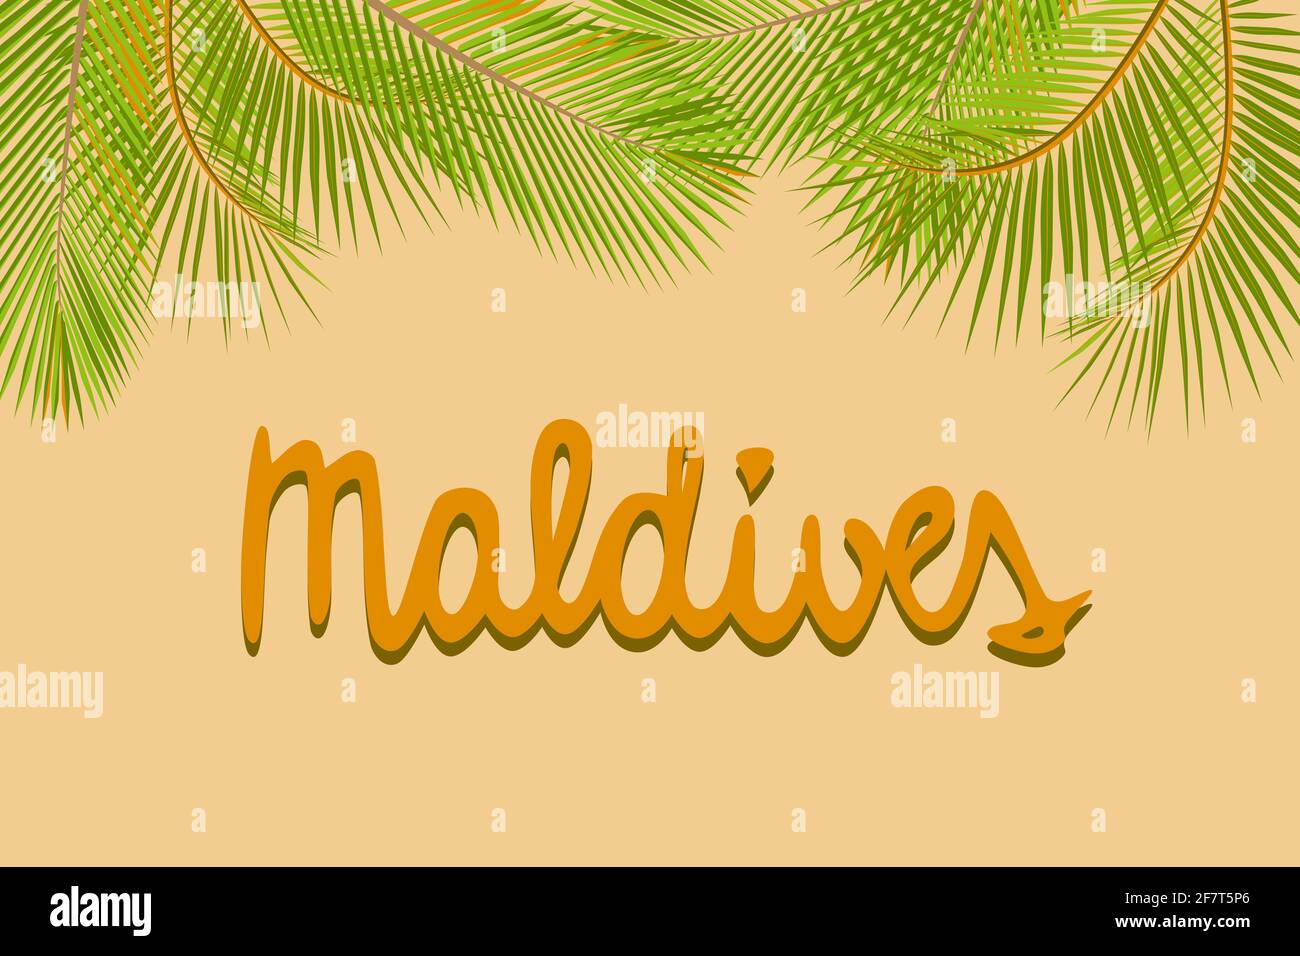 Malediven handgeschriebener Text, grüne Palmenblätter gelber Hintergrund, Poster Banner Karte Vorlage, Vektor-Illustration Stock Vektor